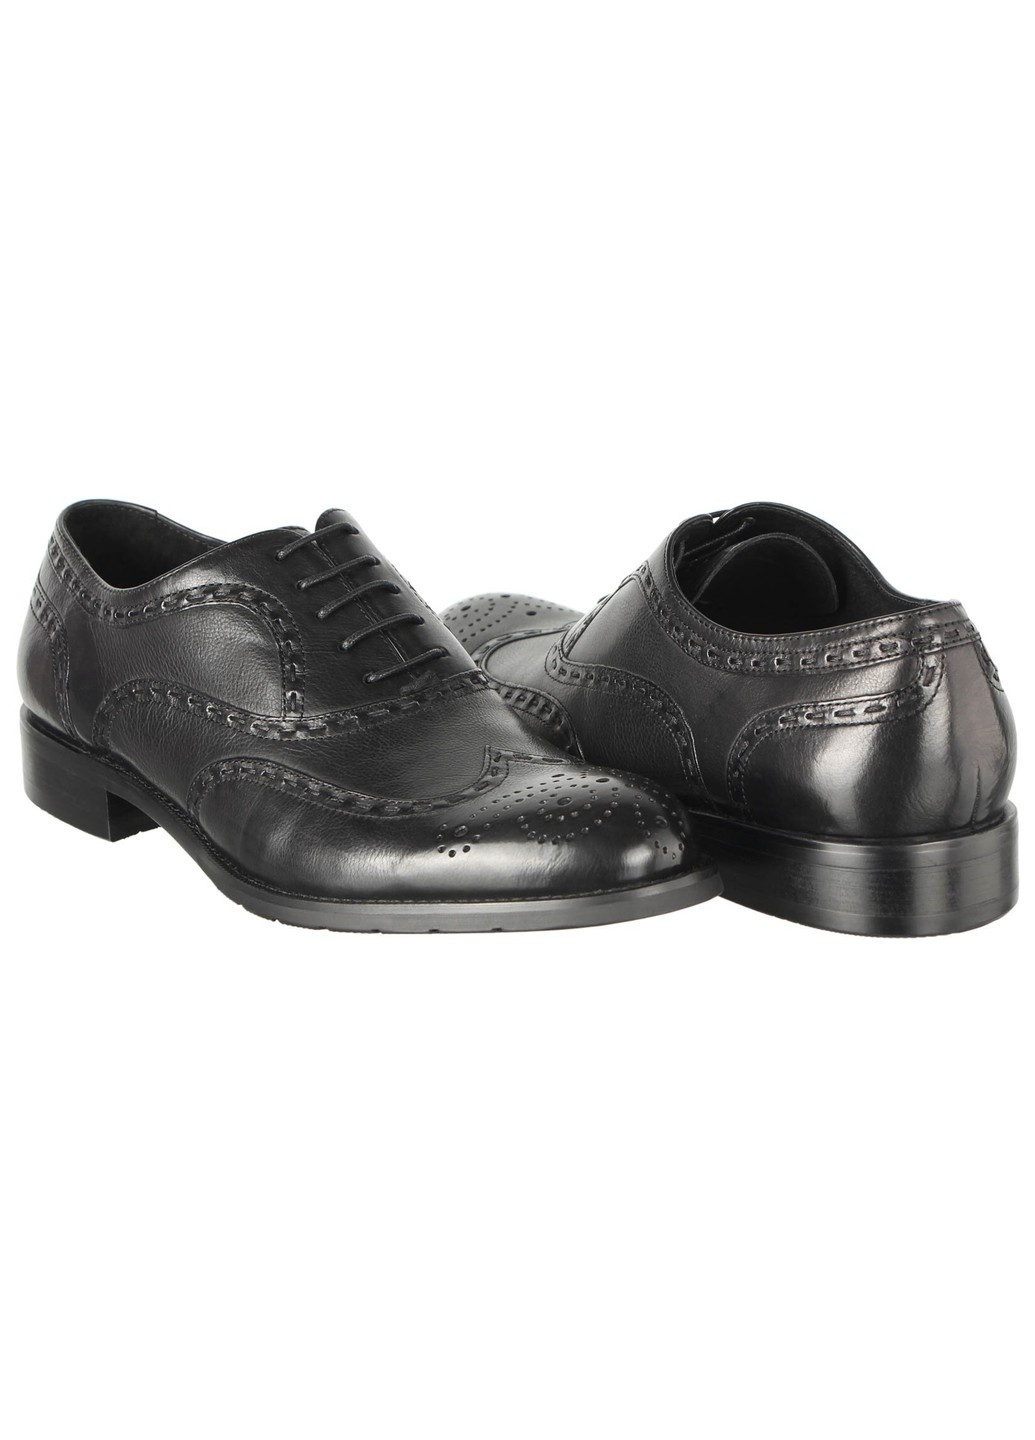 Черные мужские классические туфли 208020 Cosottinni на шнурках